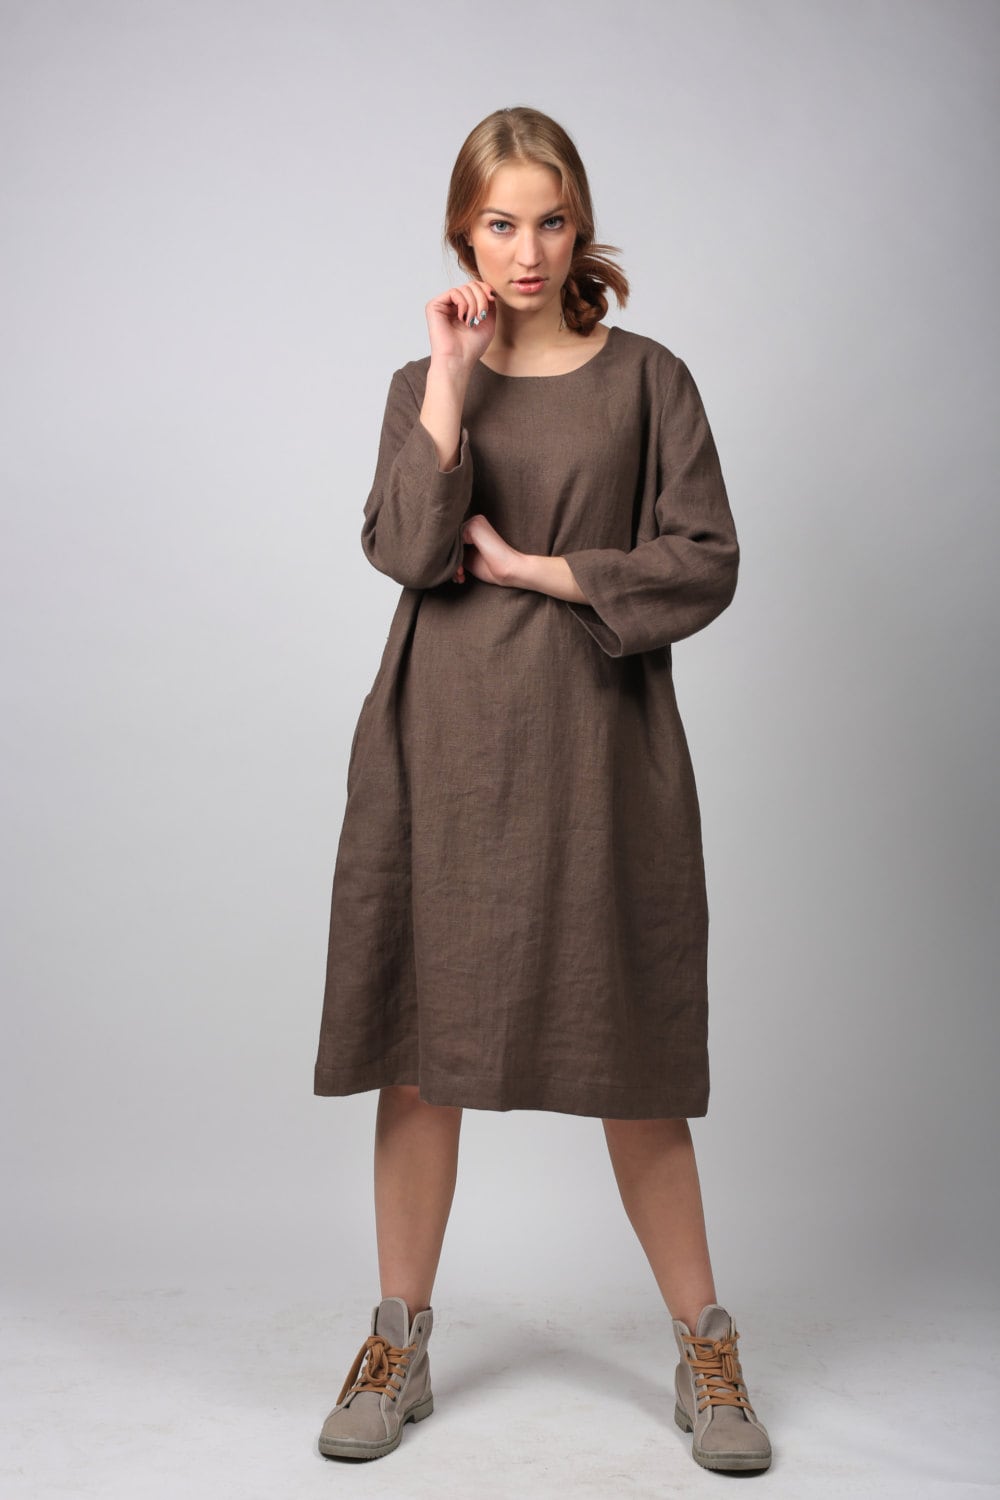 Linen dress/ Summer dress/ Washed linen dress/ Simple linen | Etsy